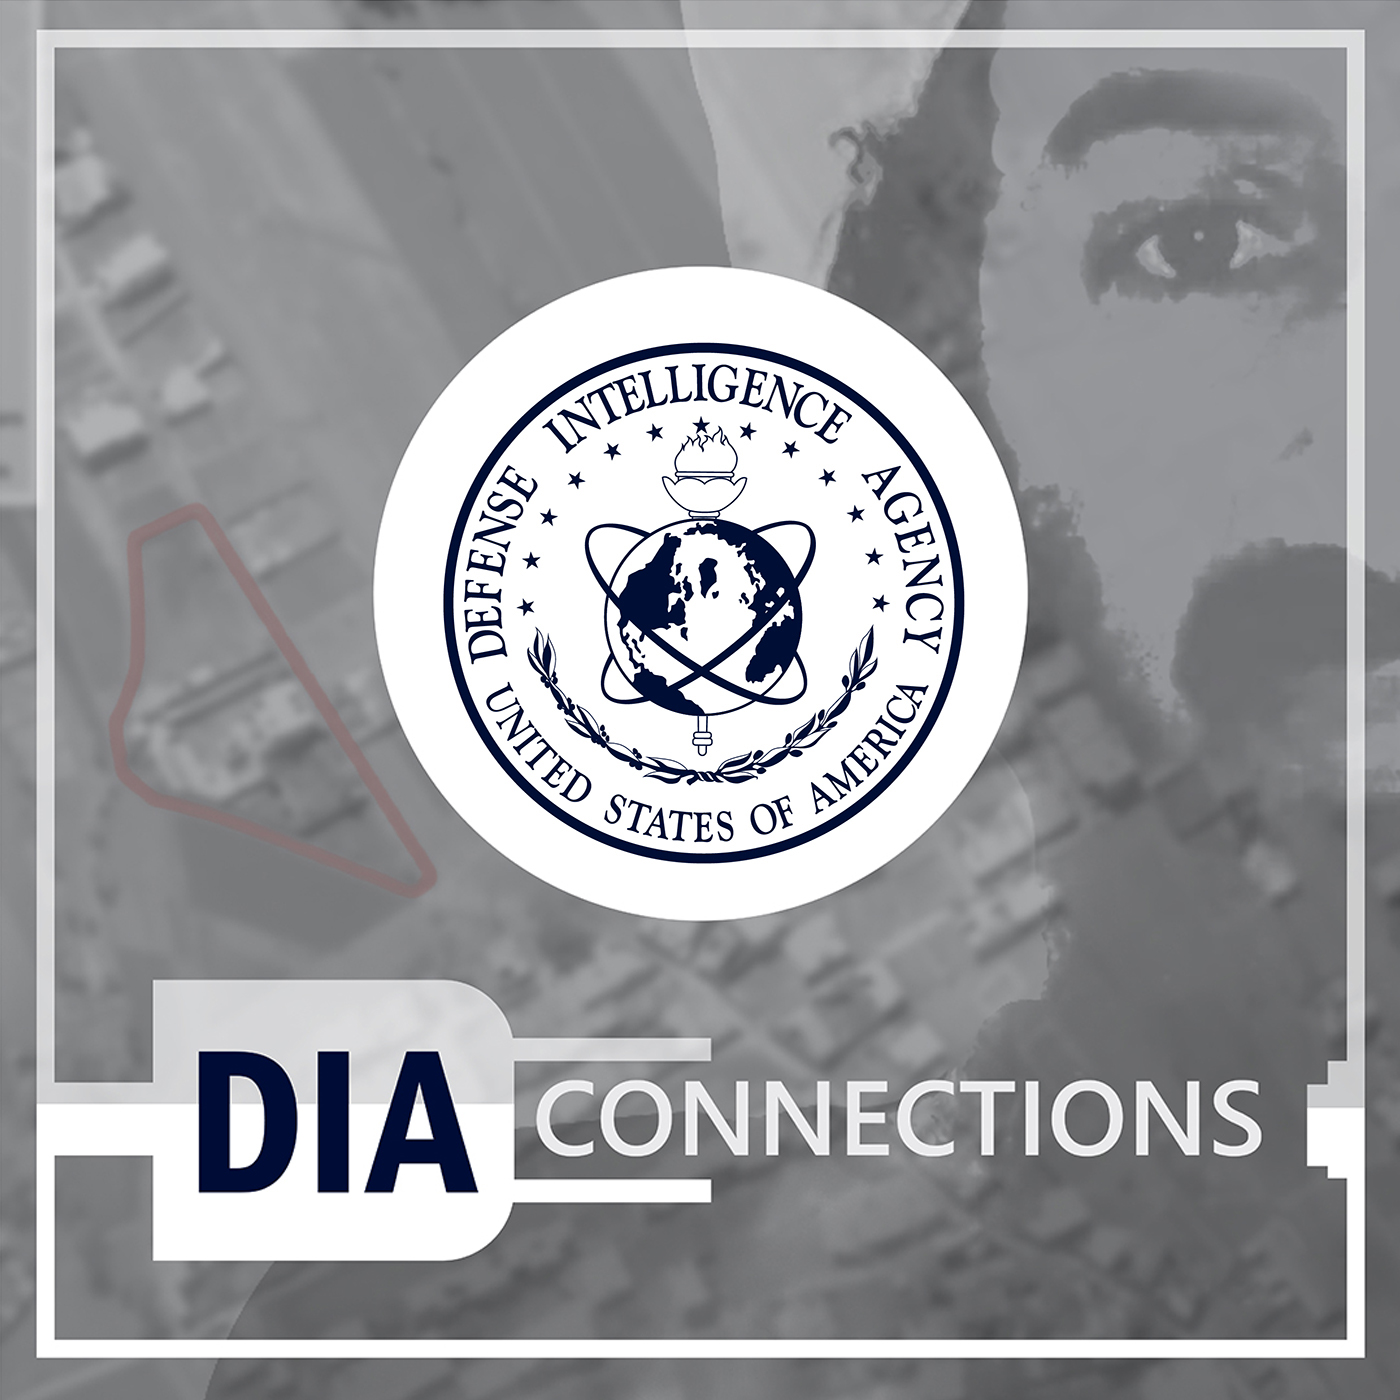 Image of male with D-I-A Seal and title. D-I-A Connections.